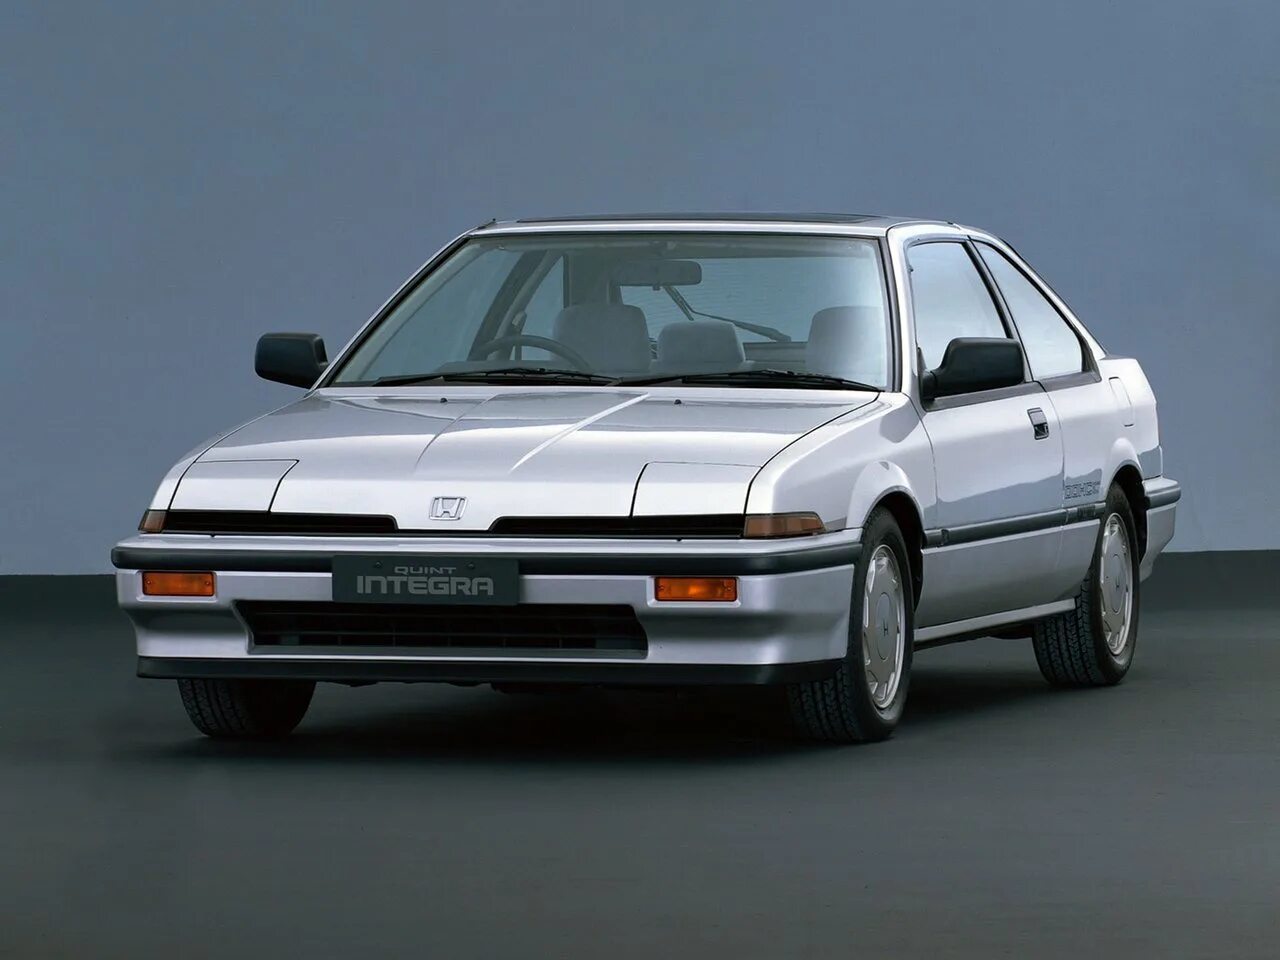 Honda Integra 3 поколение. Honda Integra 1 поколение. Honda Integra 2 поколение. Хонда Интегра 1985. Старые honda